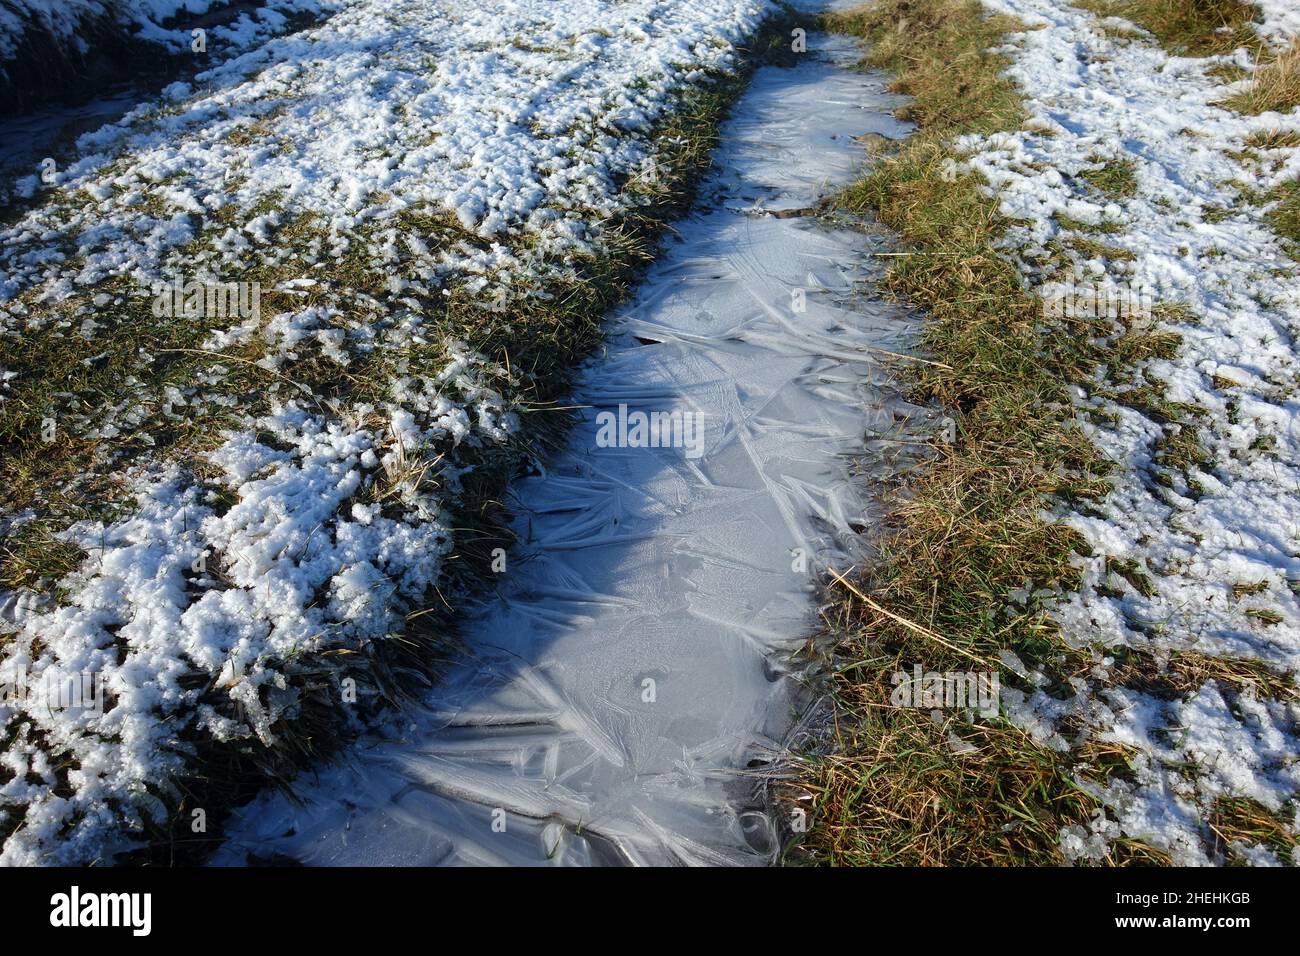 Eisige Muster auf gefrorenen Puddle by Path nach Ingleborough (1 der Yorkshire 3 Peaks) von Clapham, Yorkshire Dales National Park, England, Großbritannien. Stockfoto